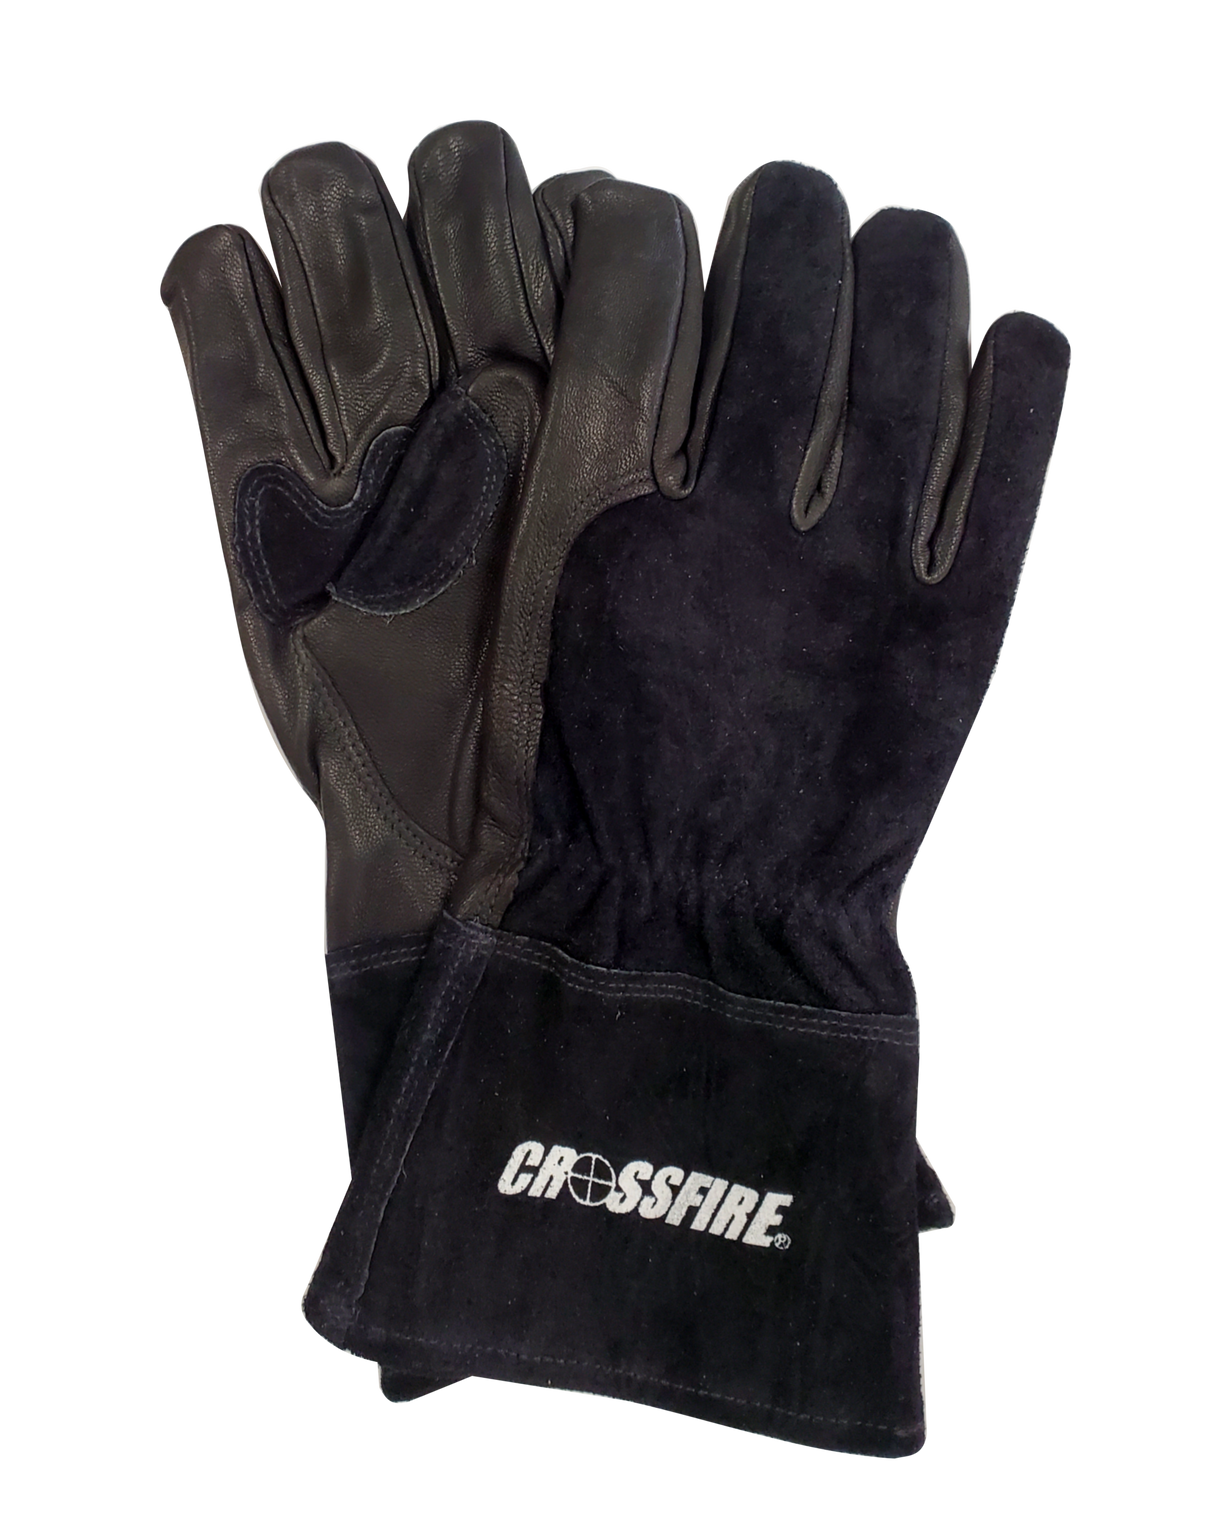 Crossfire Welders Welding Gear Premium Heavy Duty MIG-Stick Welding Gloves